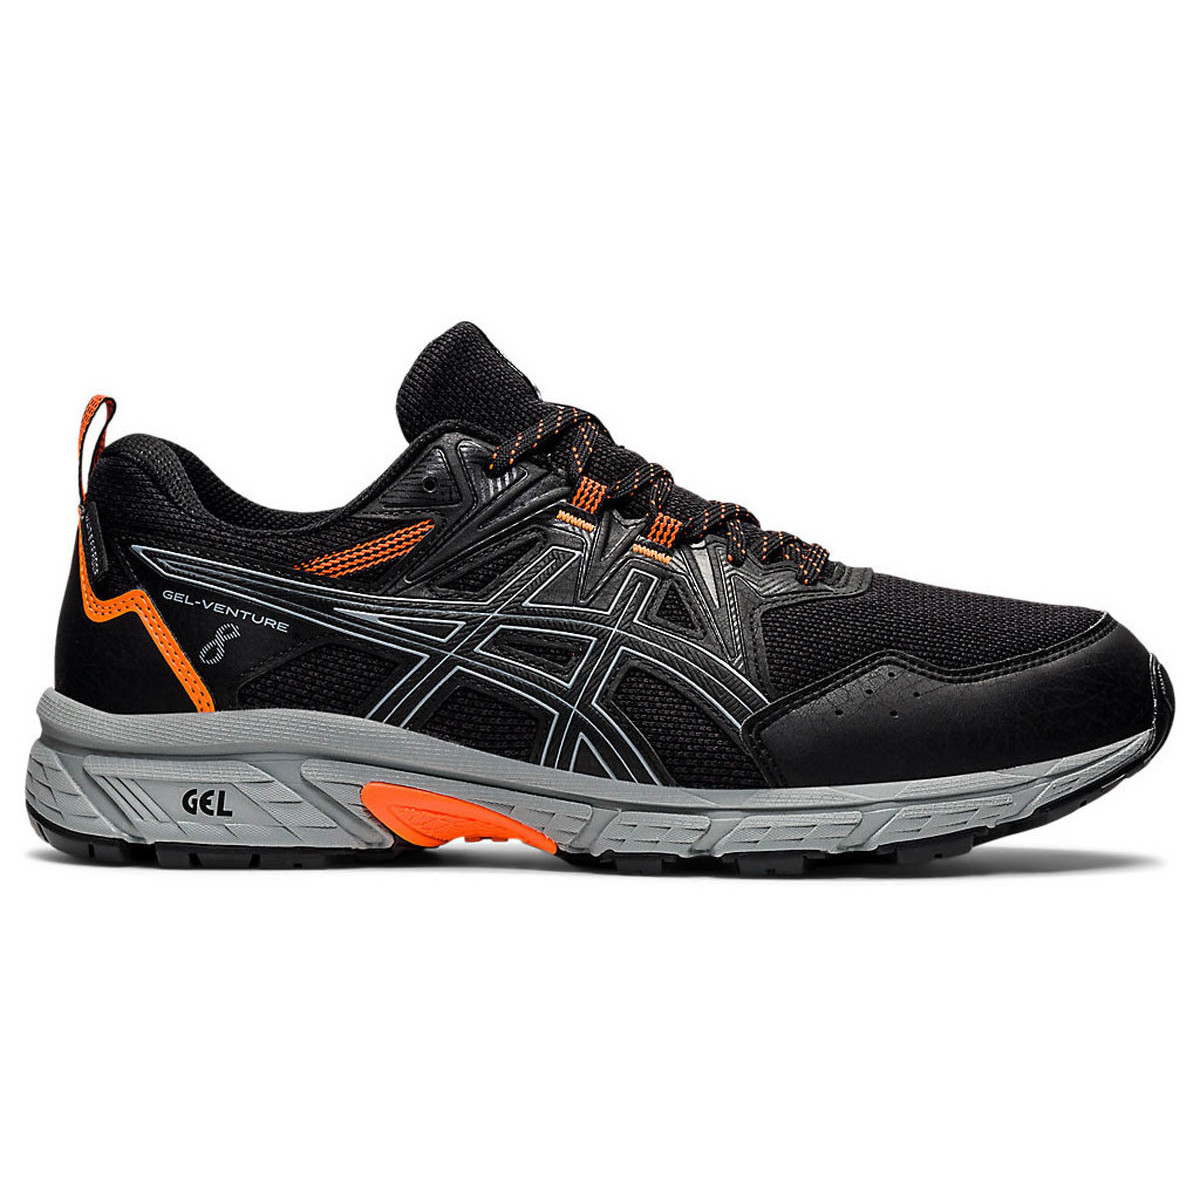 Chaussures Homme Running / trail Asics Chaussures Ch Gel Venture 8 Wp (black/orange) Noir